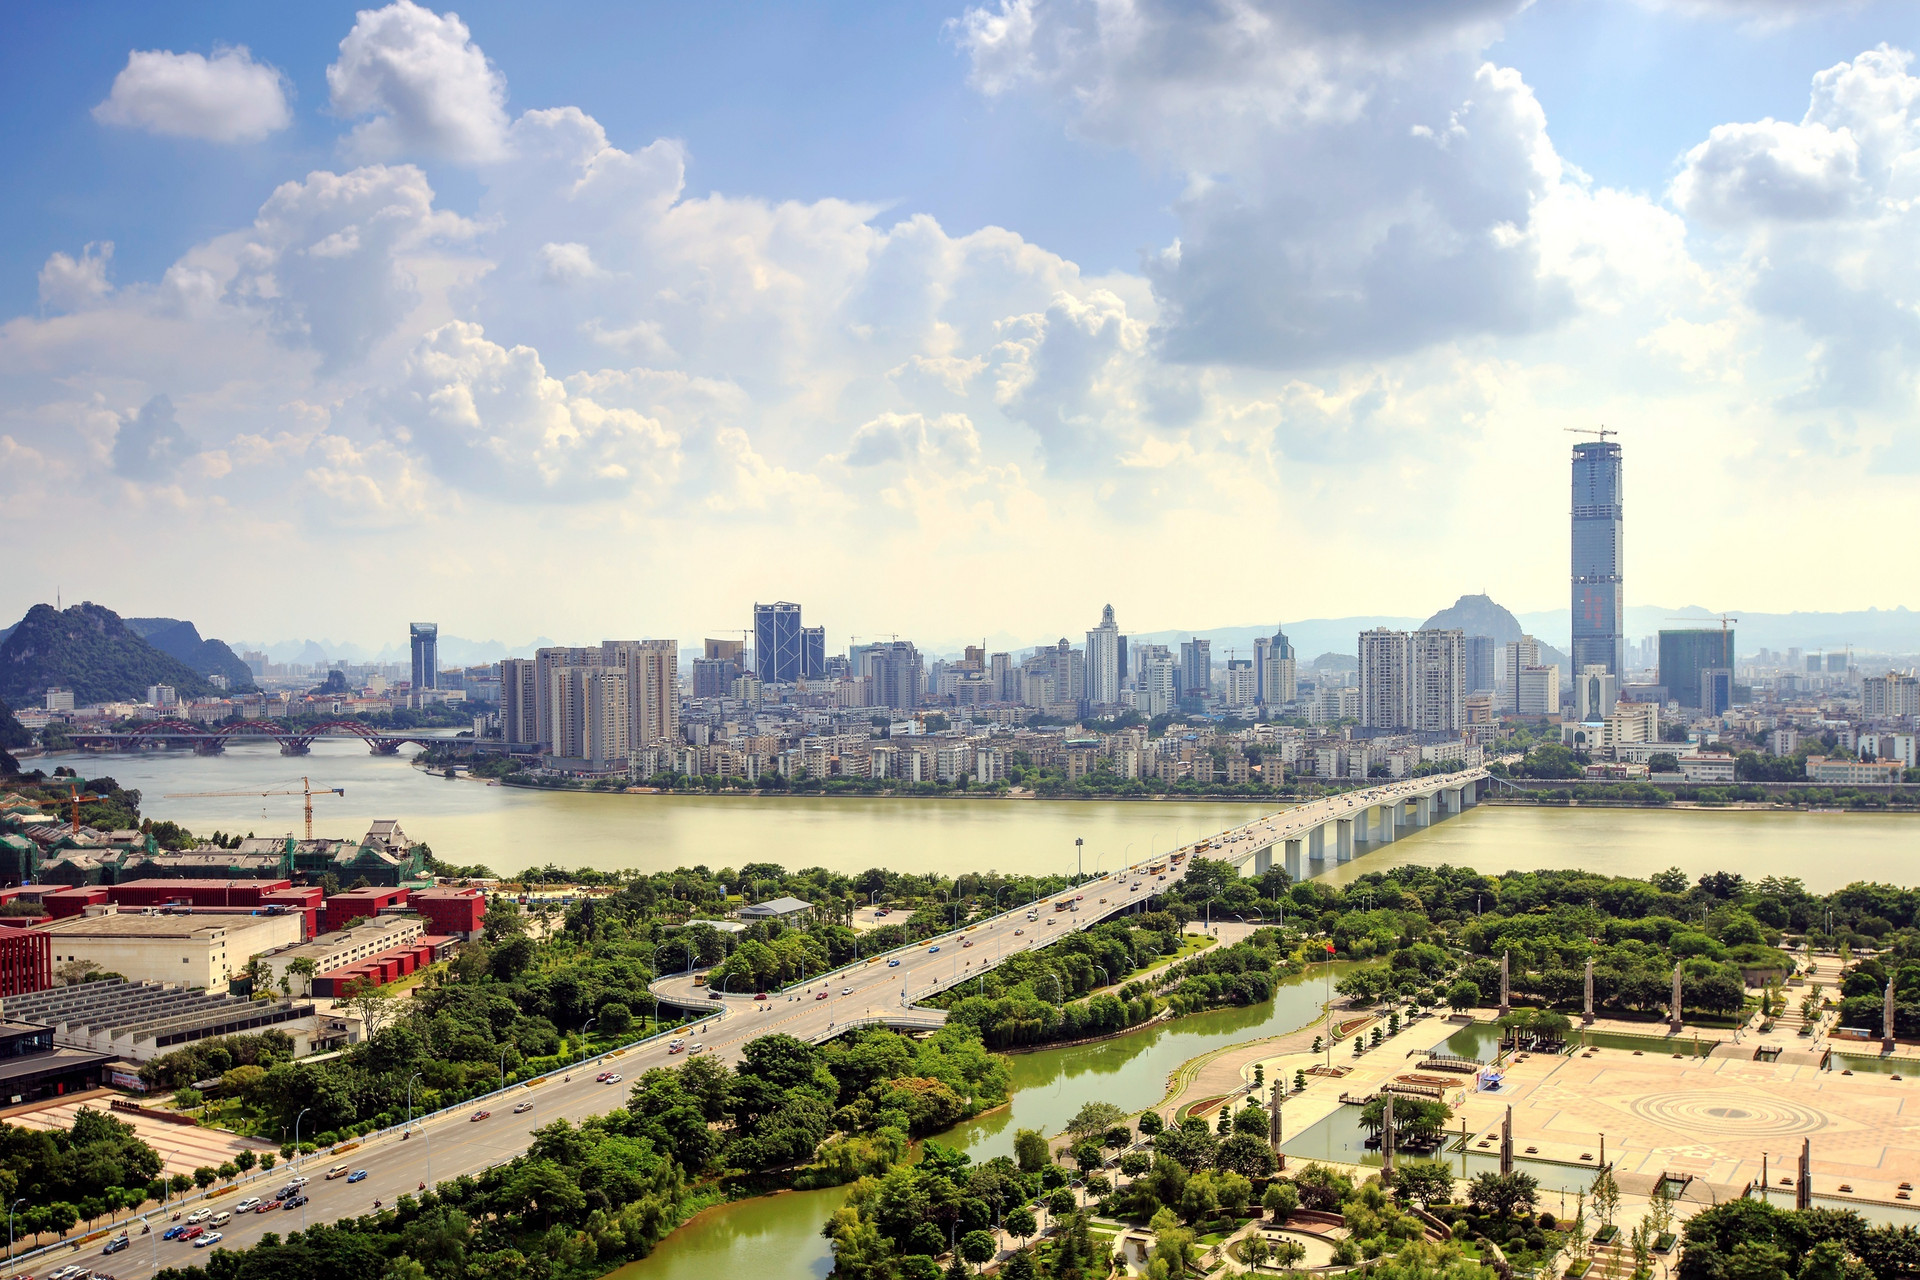 广西柳州文旅产业发展大会签单1535亿元